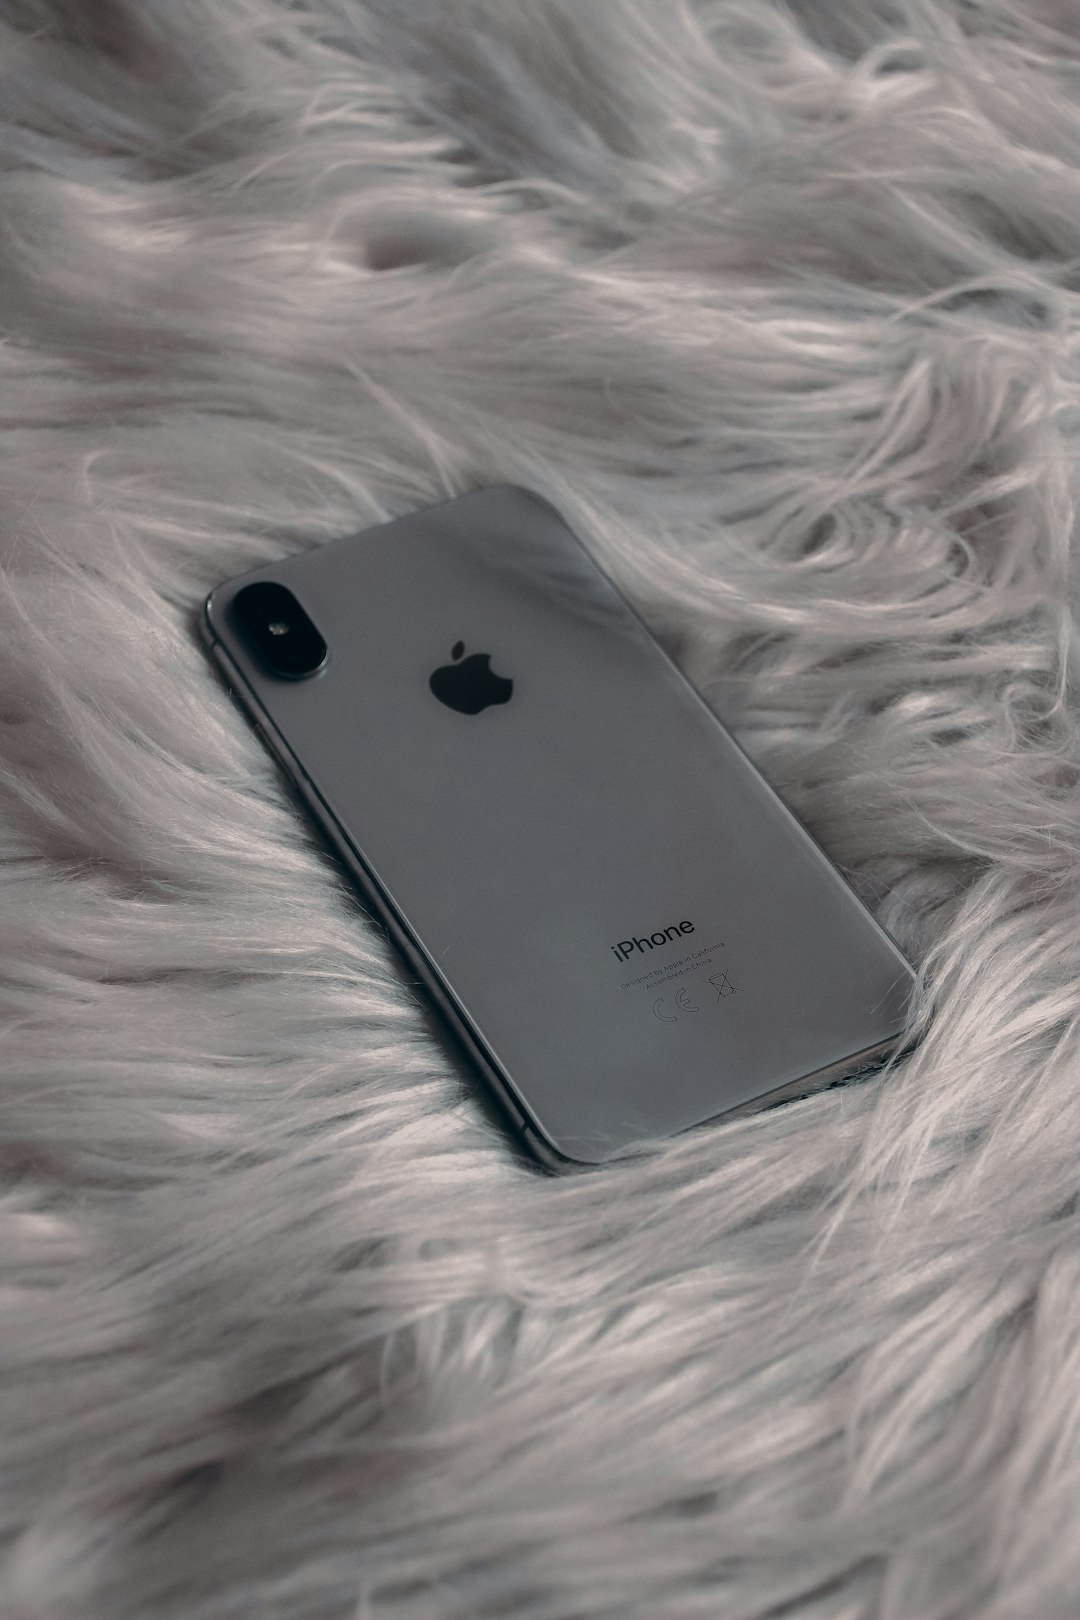 black iphone 7 plus on white textile